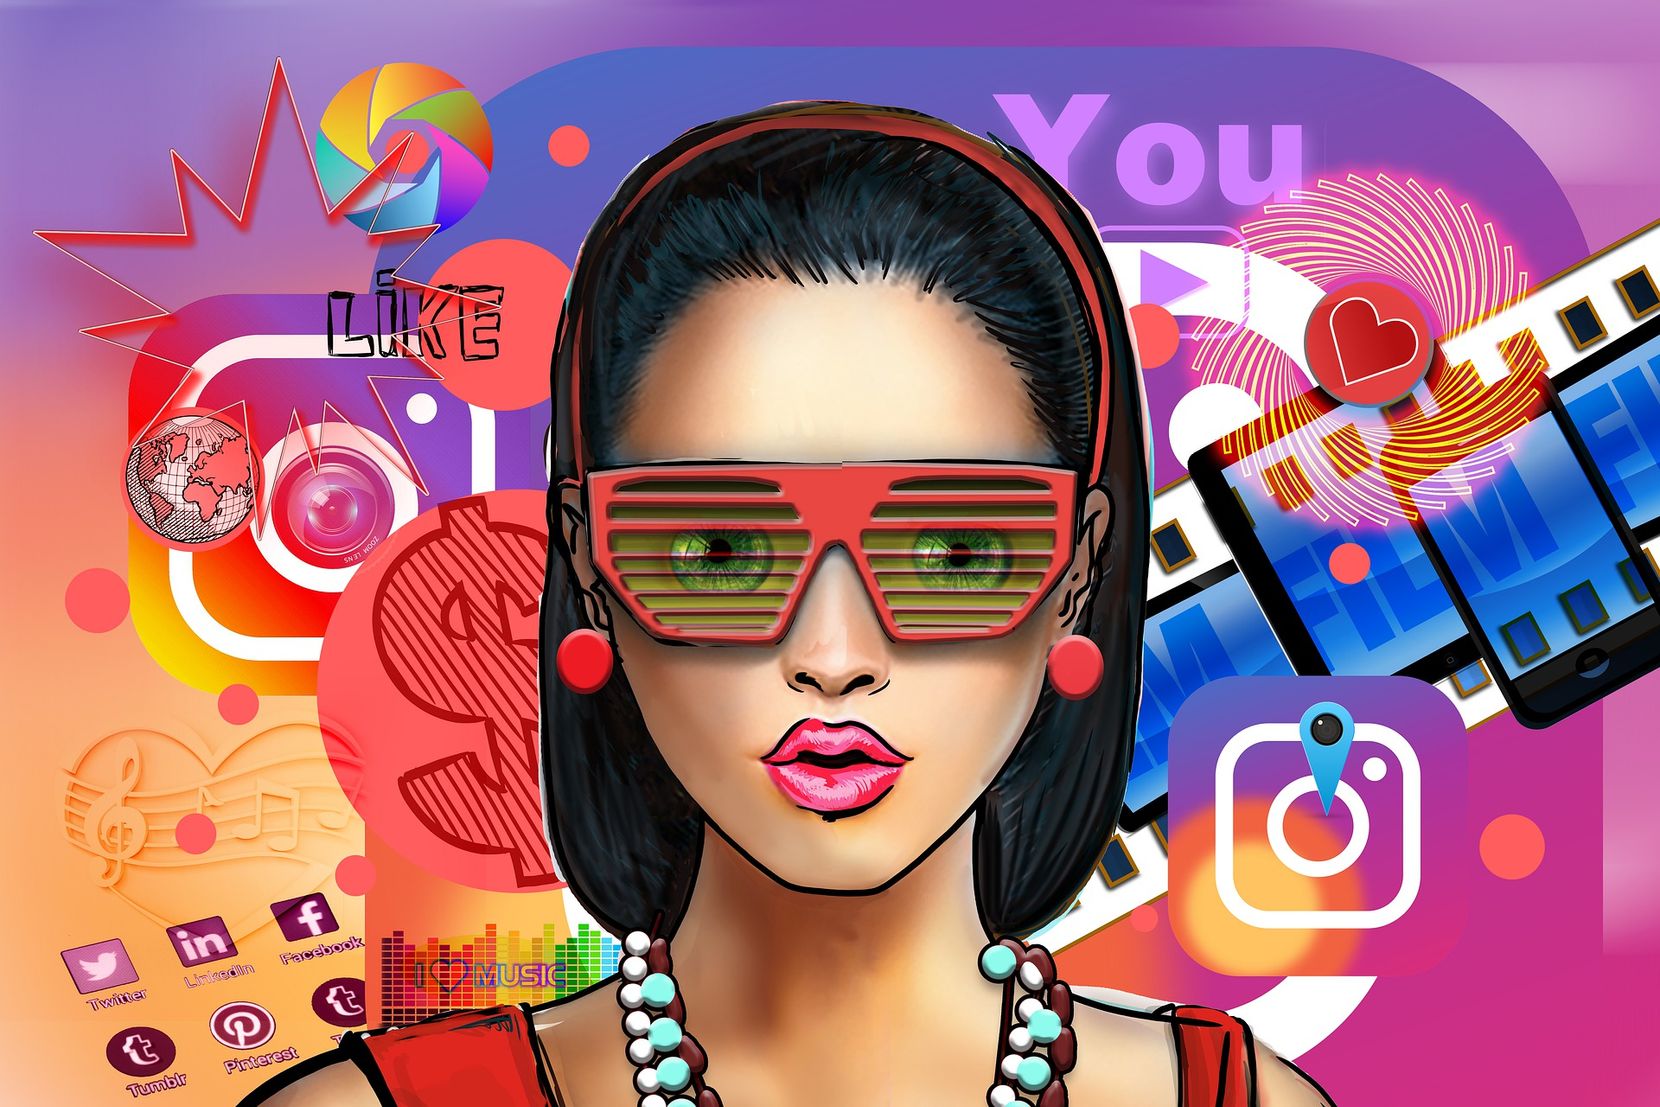 Grafik mit einer Person und zahlreichen Icons von Social Media-Plattformen.